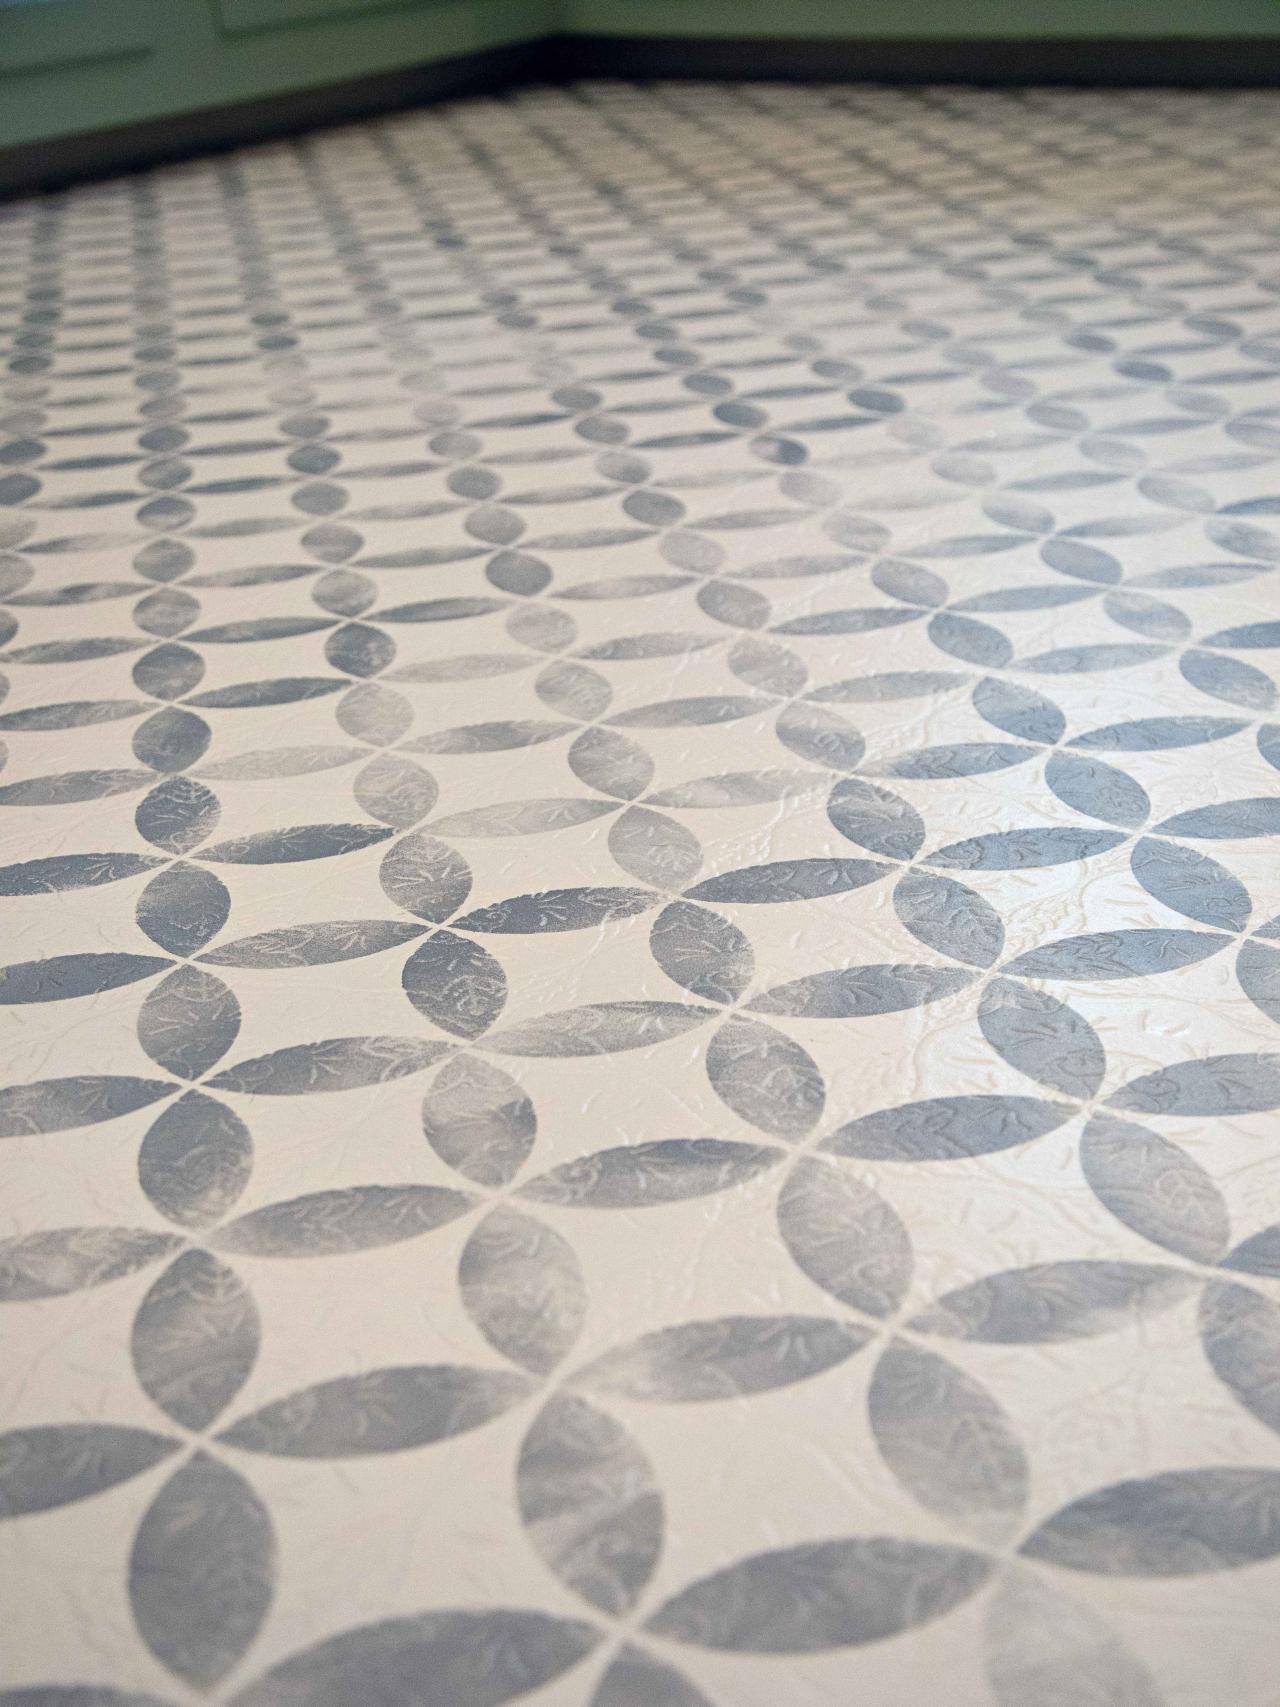 How To Paint Old Vinyl Floors Look, Mosaic Look Vinyl Floor Tiles